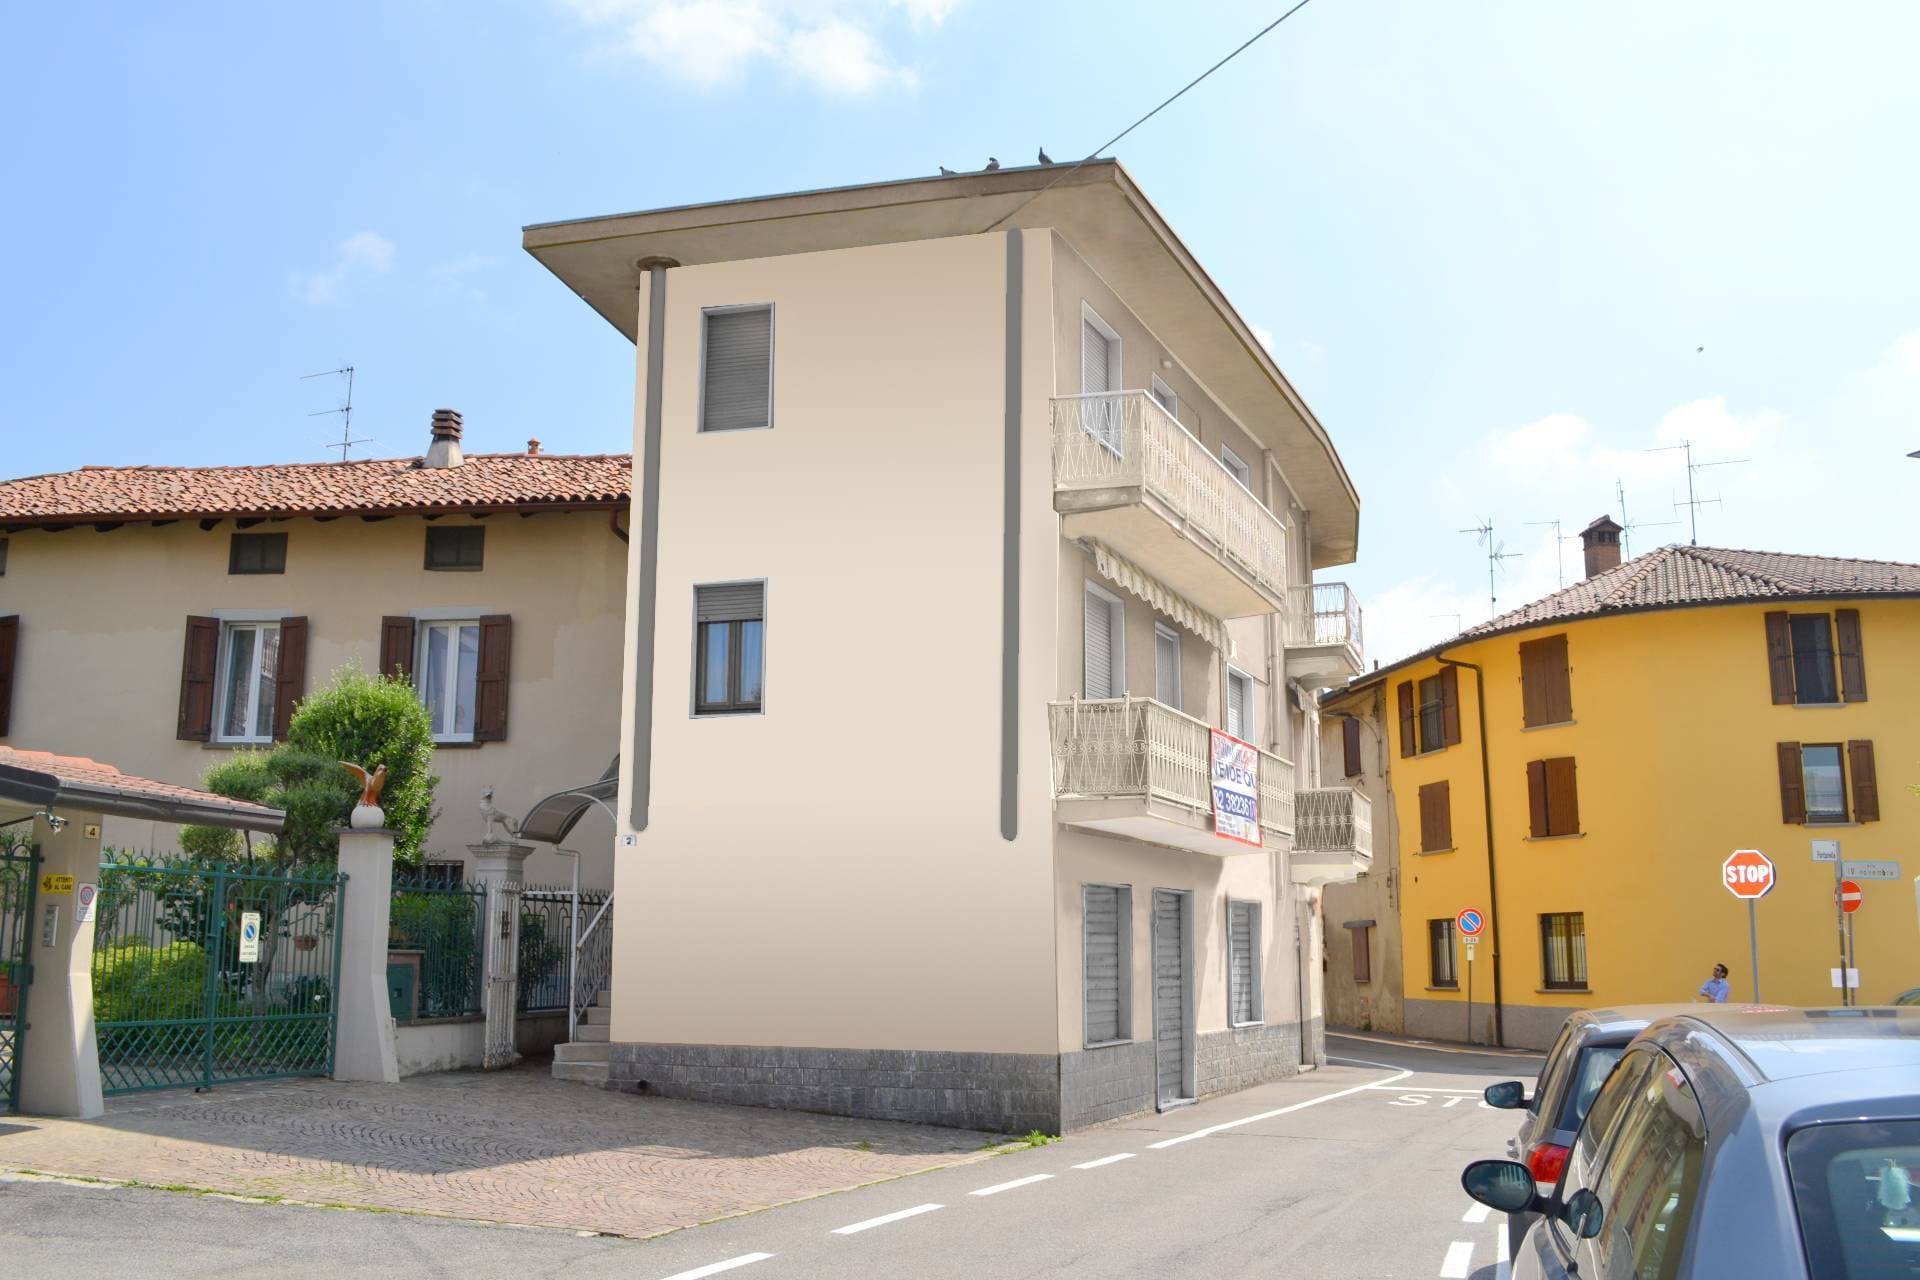 Appartamento in vendita a Suisio, 4 locali, prezzo € 100.000 | PortaleAgenzieImmobiliari.it